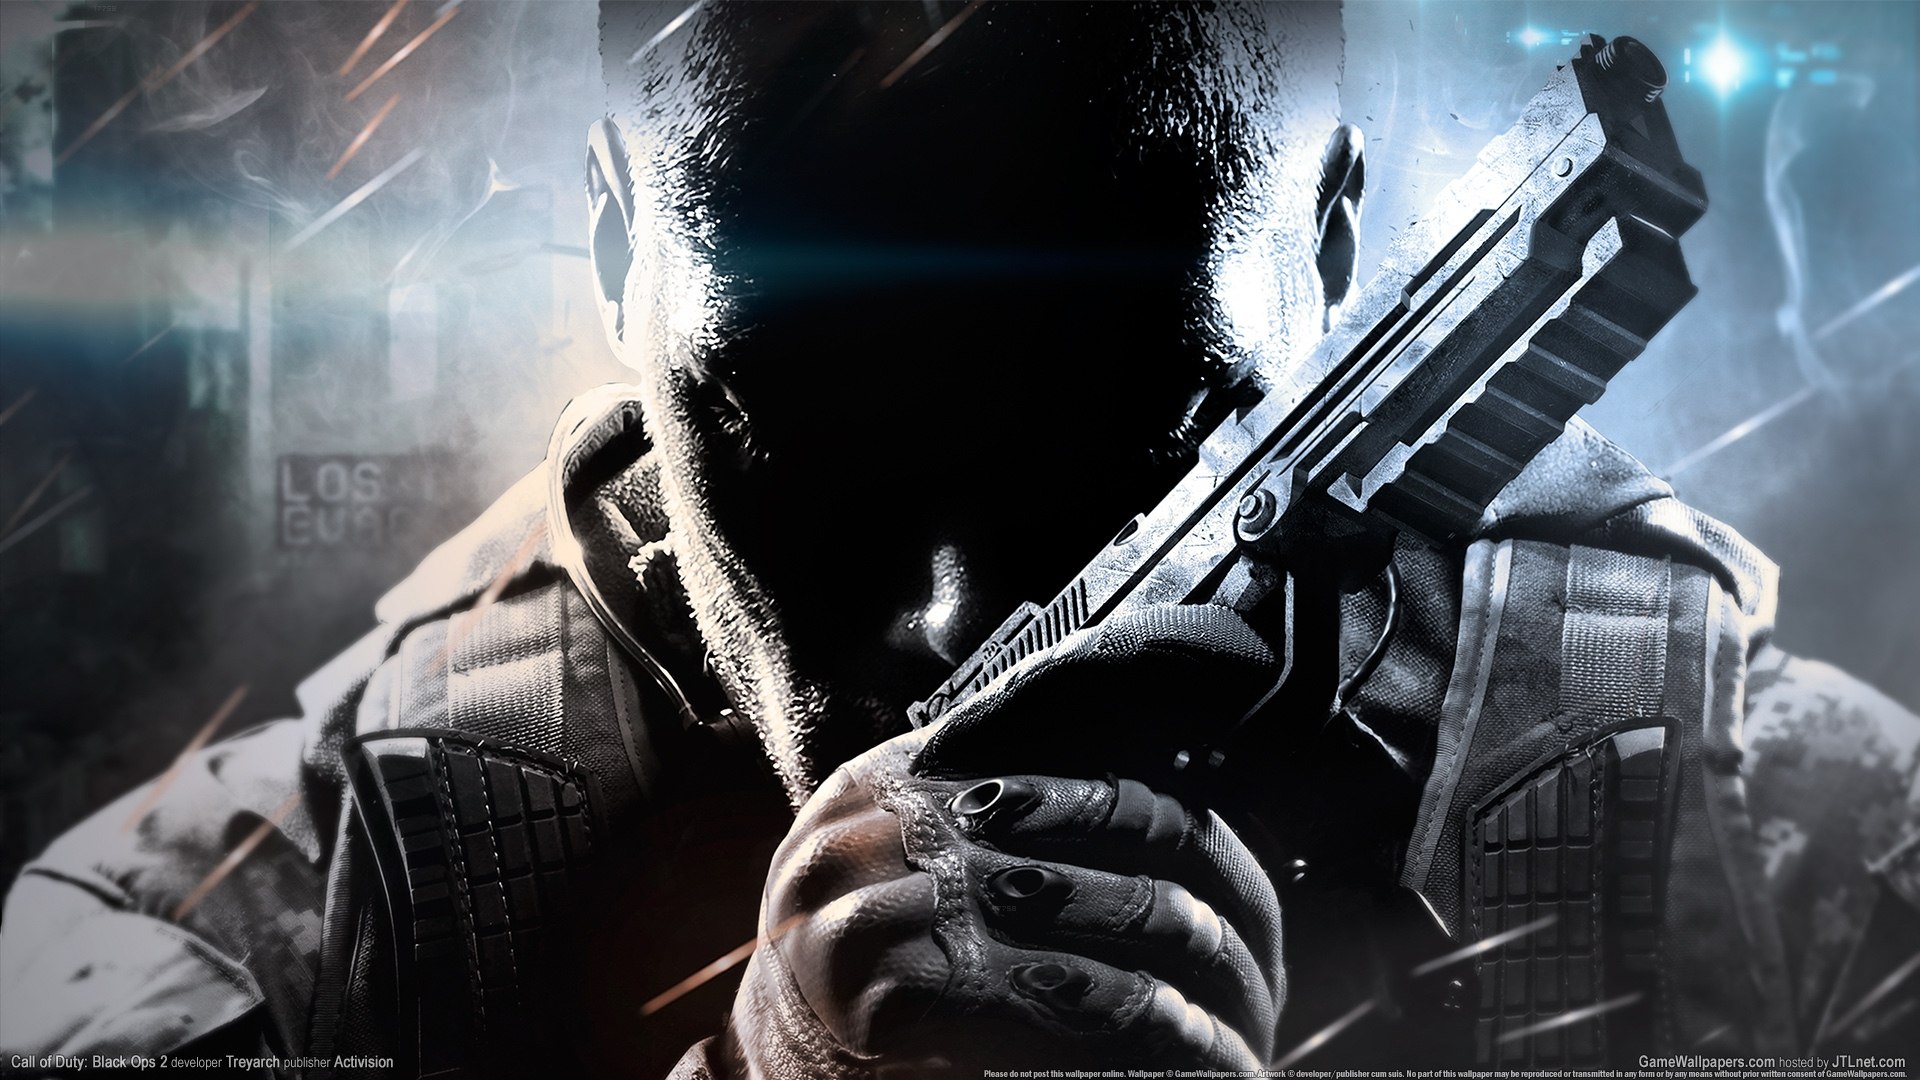 Hein A Activision Anunciou Que Vai Lan Ar Mais Um Call Of Duty